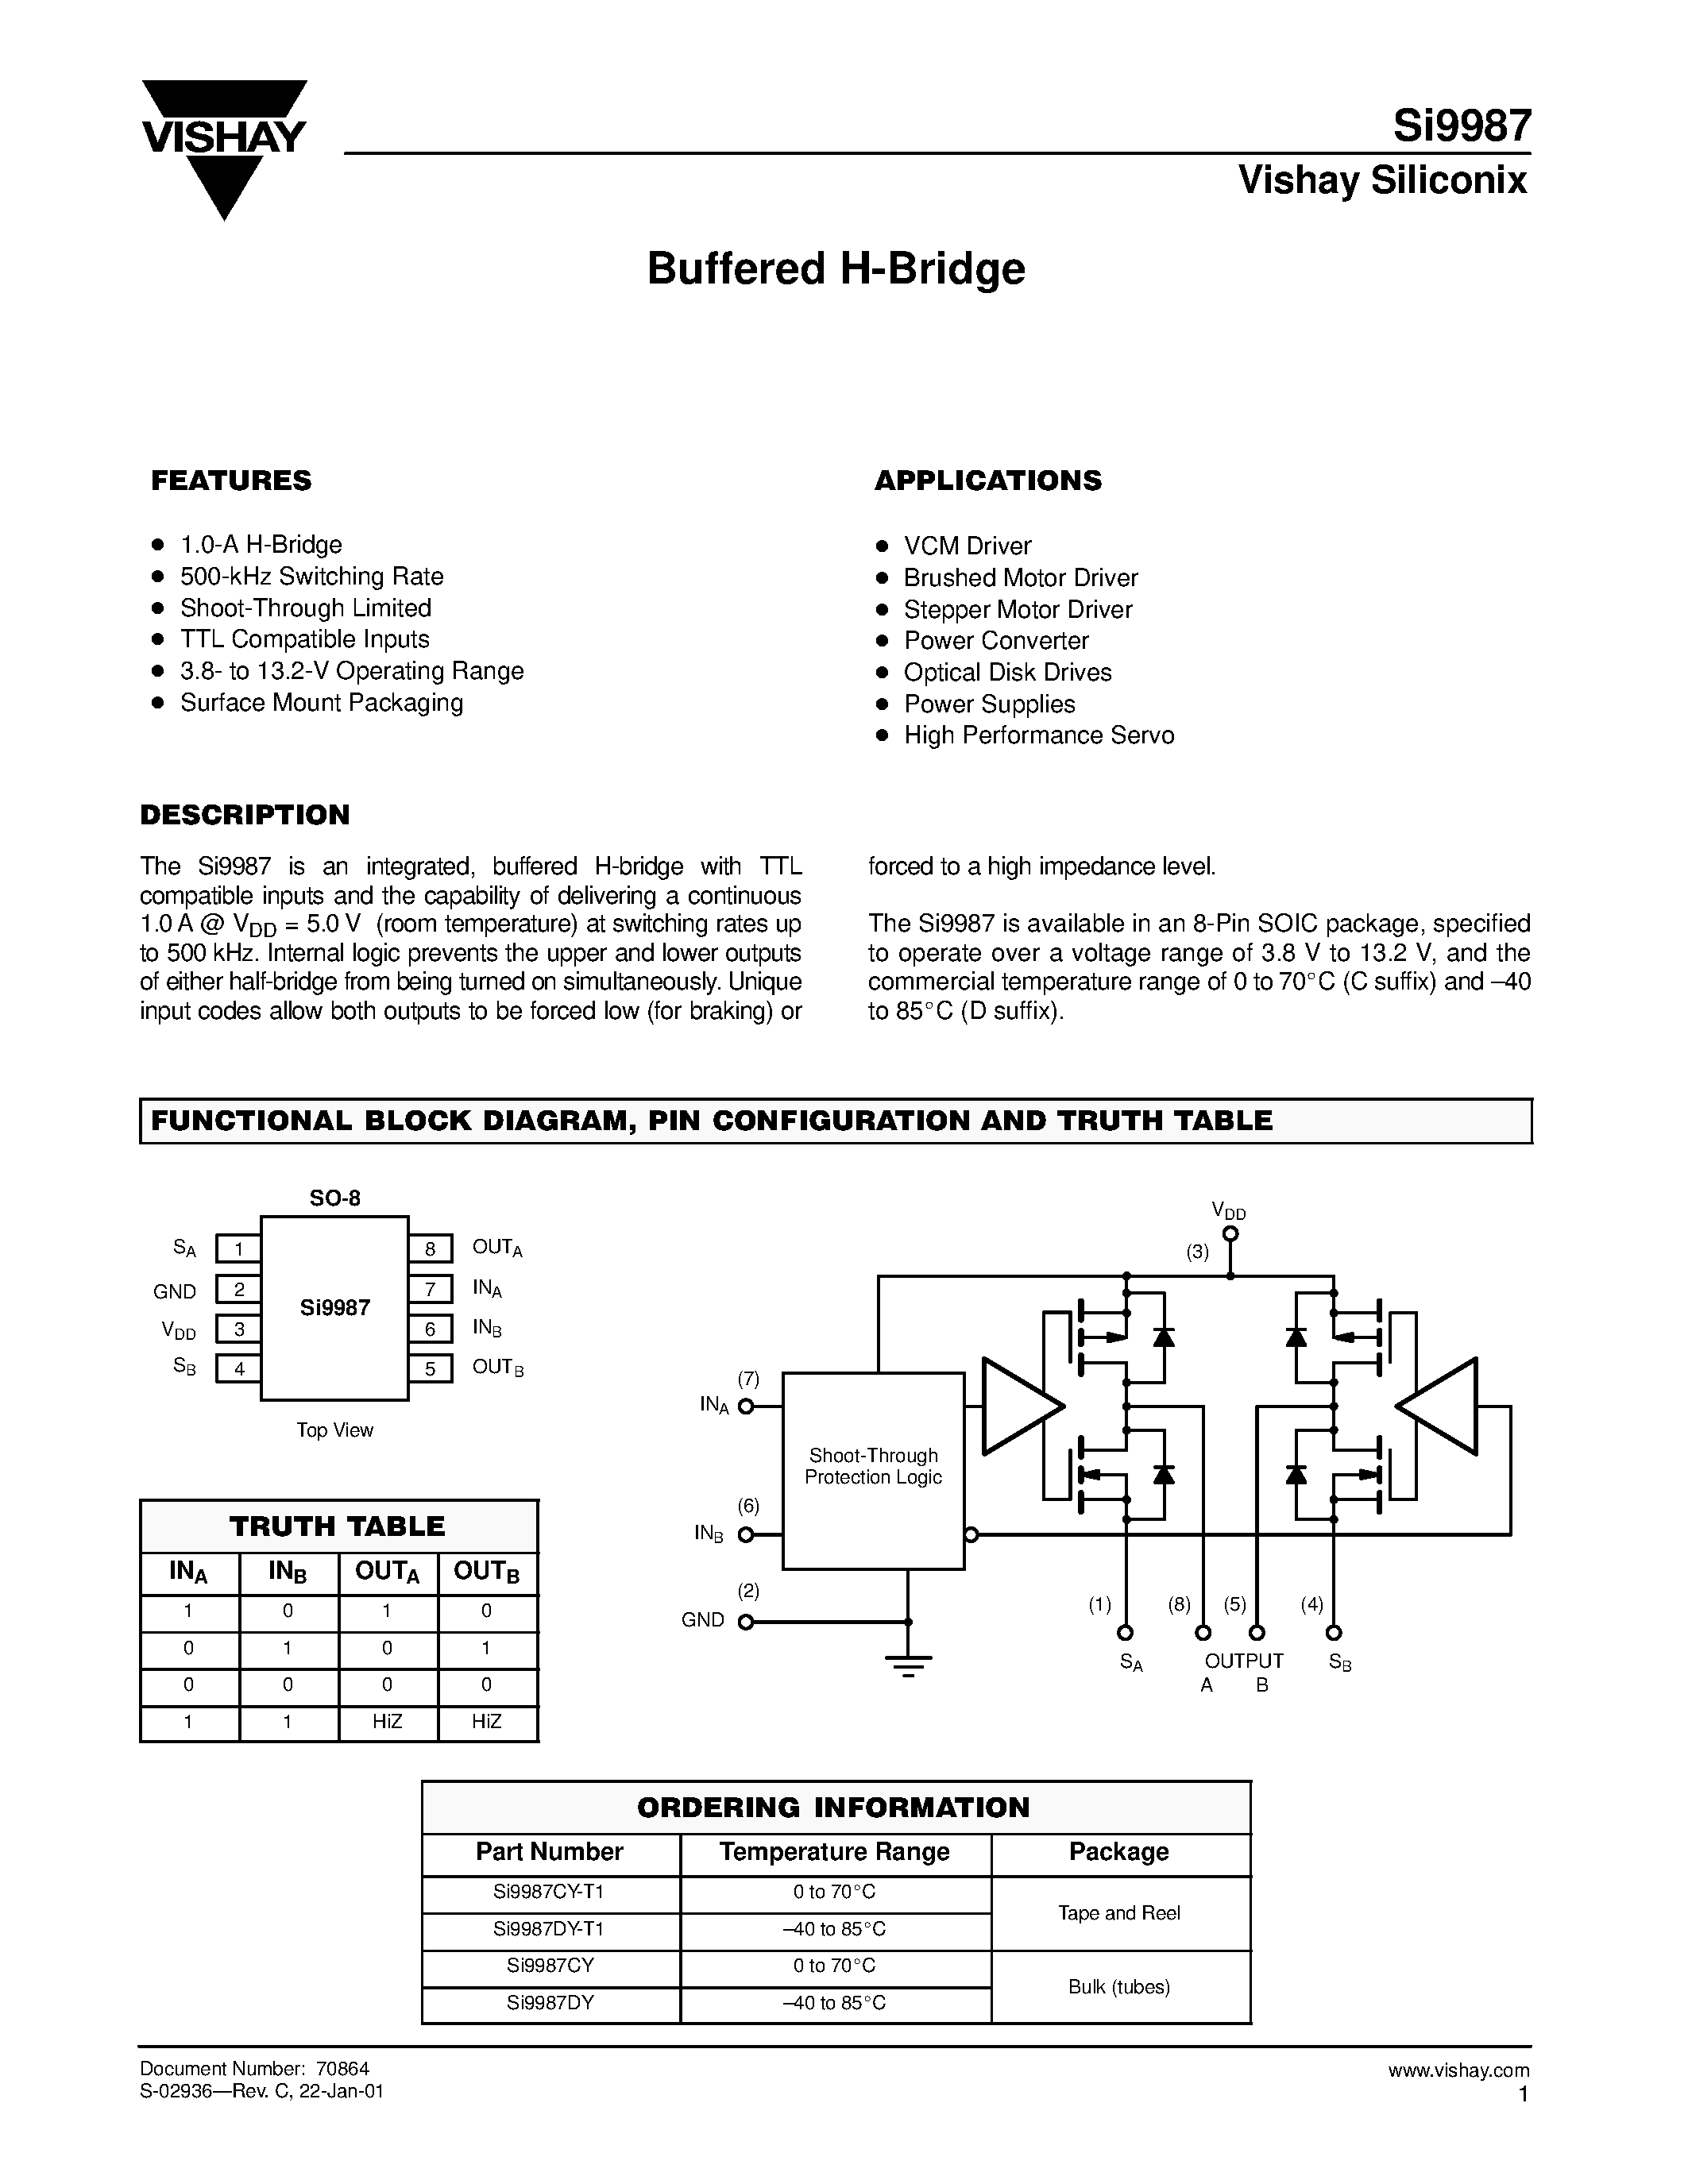 Datasheet Si9987CY-T1 - Buffered H-Bridge page 1